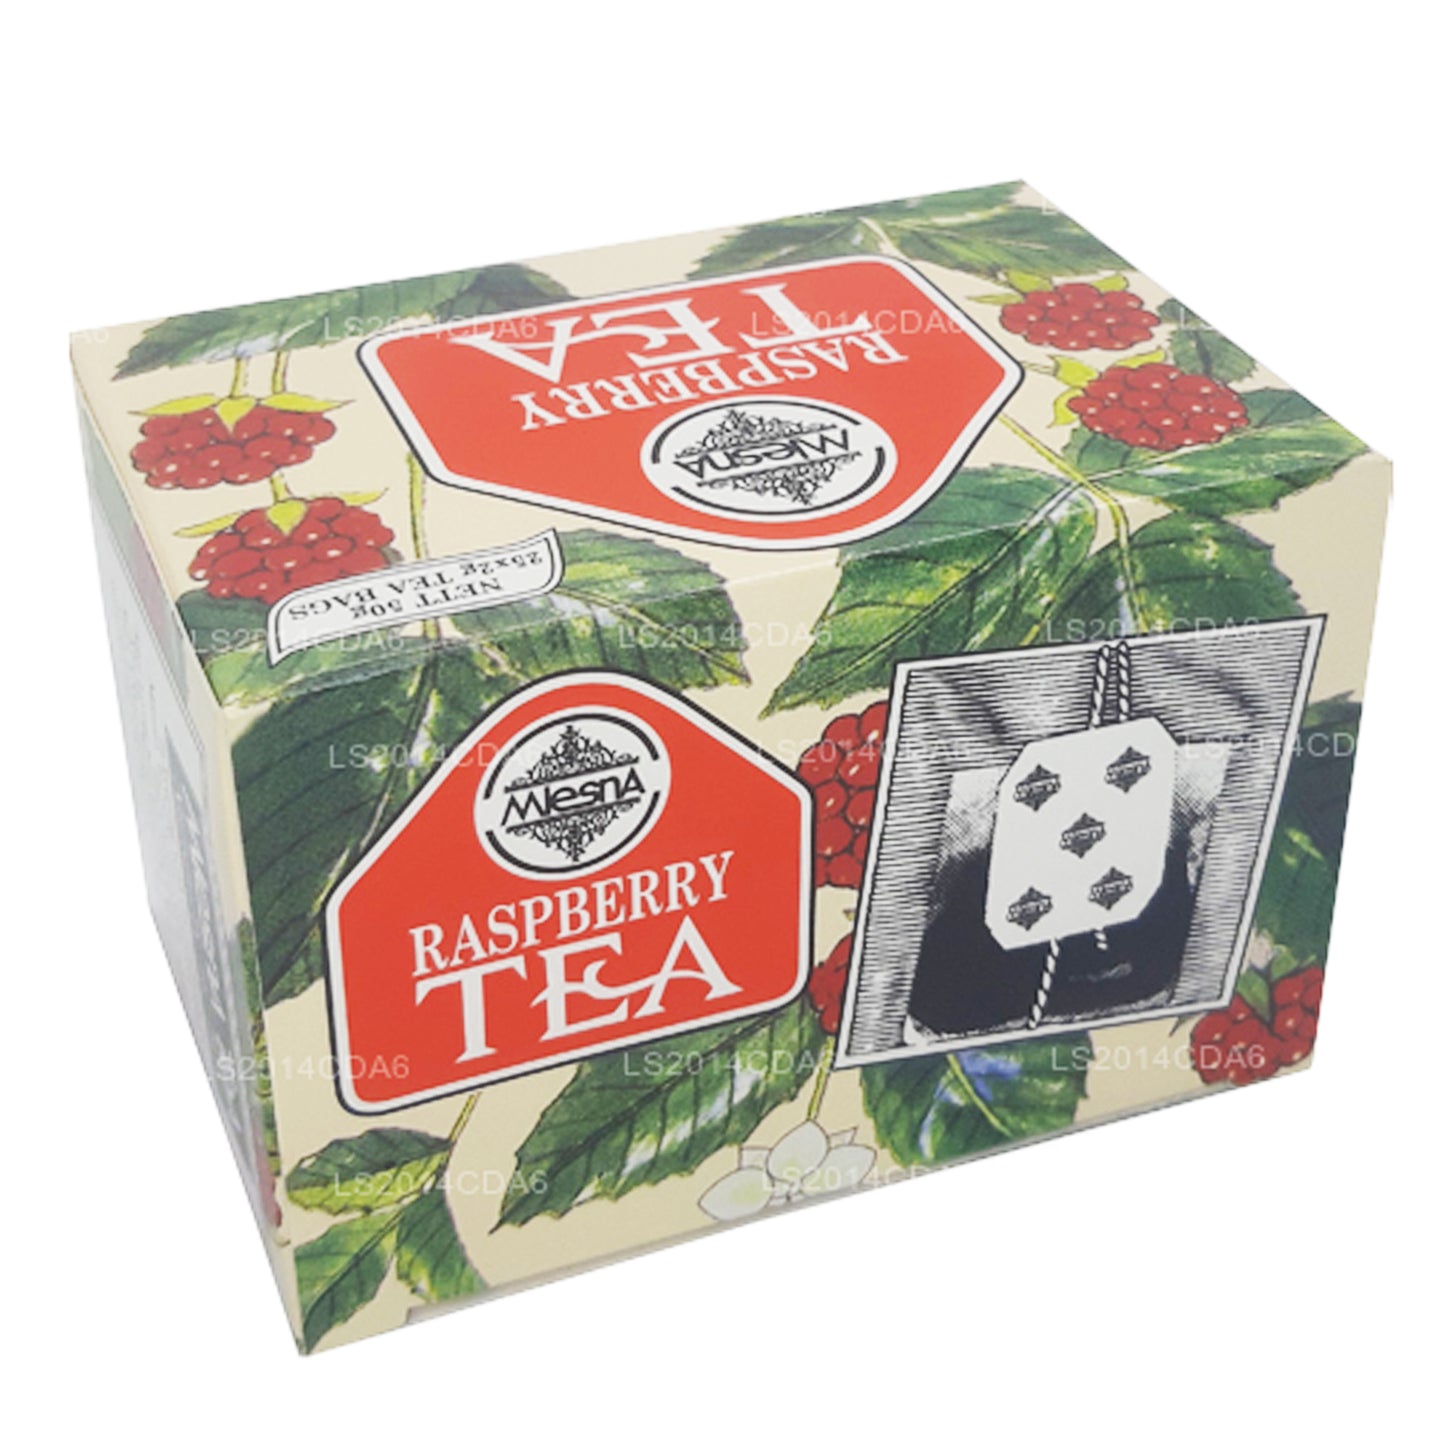 Mlesna Ahududu Çayı (50g) 25 Poşet Çay